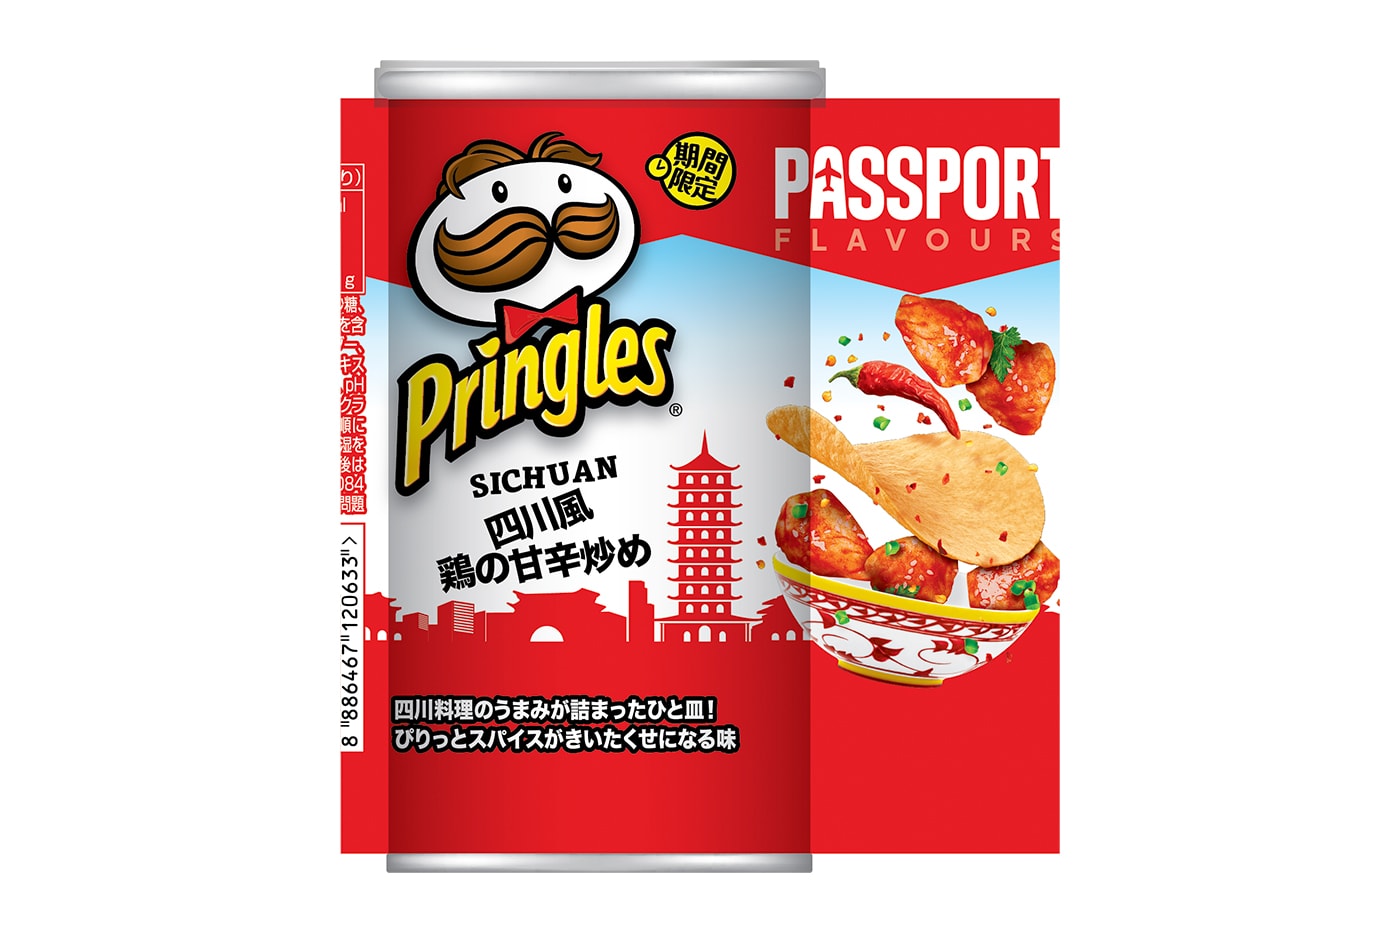 Pringles Sichuan Stir-fried Chicken